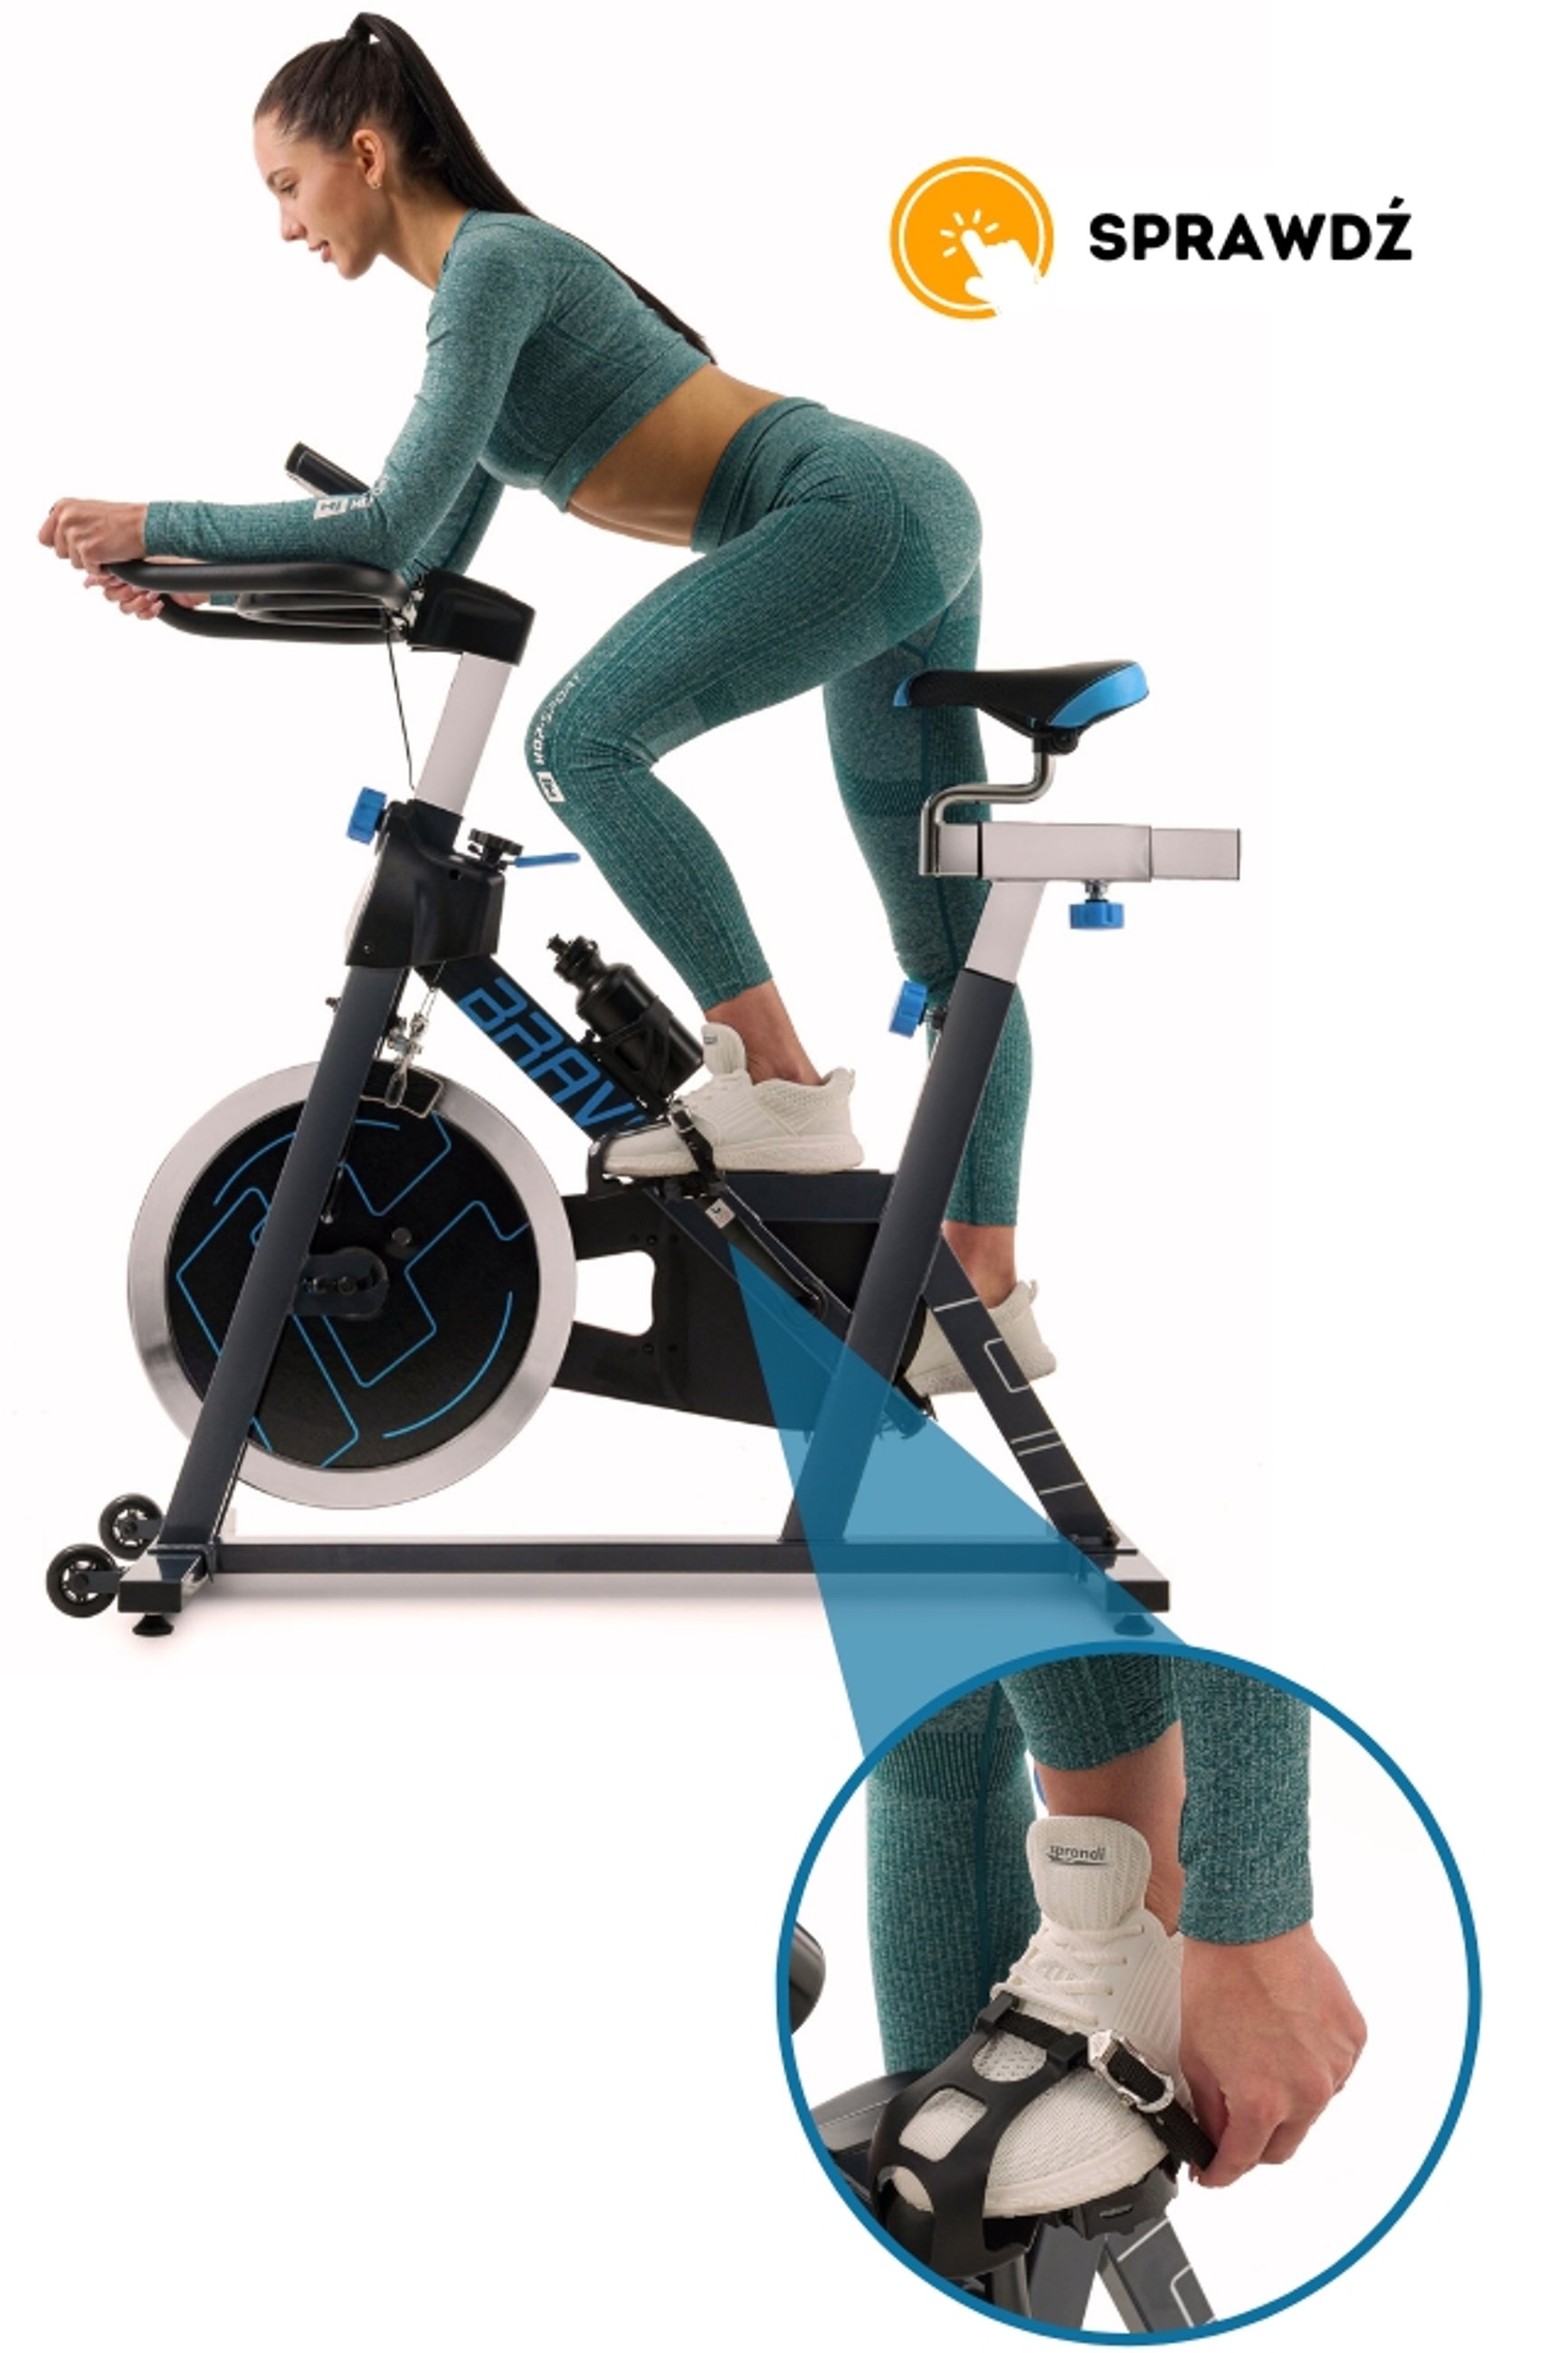 modelka trenująca na rowerze spinningowych HS-045IC Bravo marki Hop-Sport